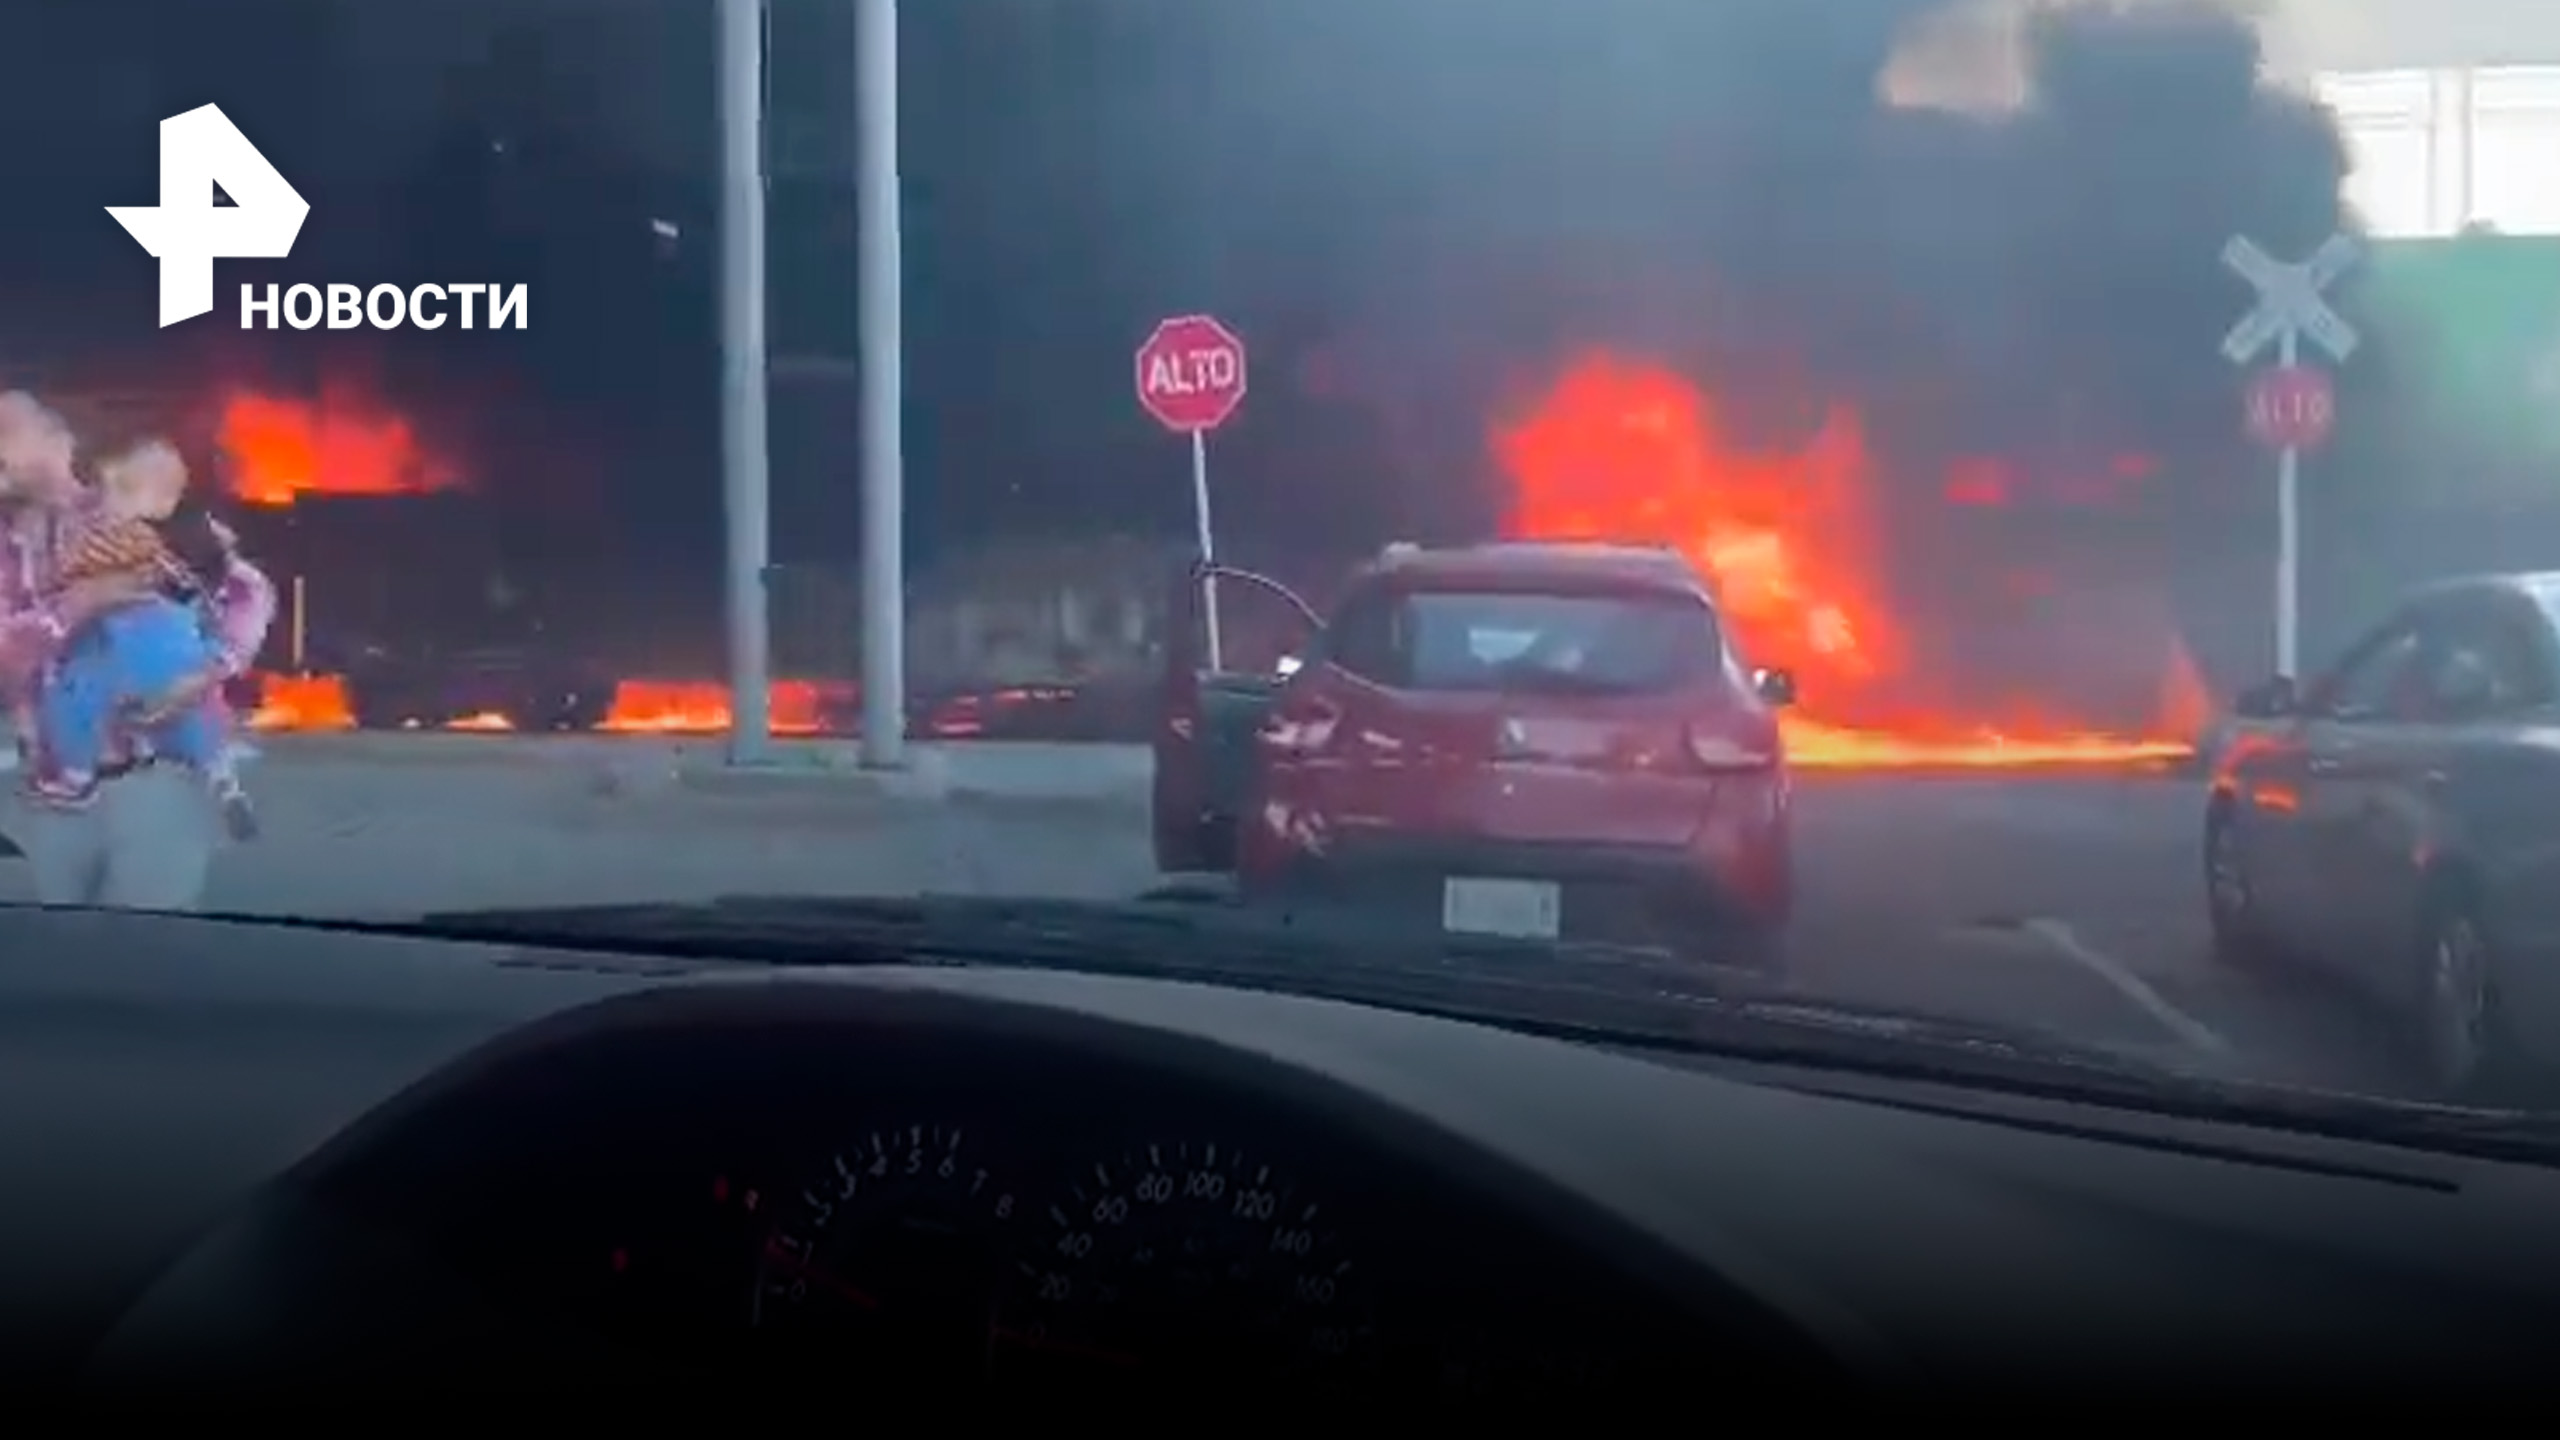 Через огненное пламя: в Мексике товарный поезд проехал сквозь пожар / РЕН Новости